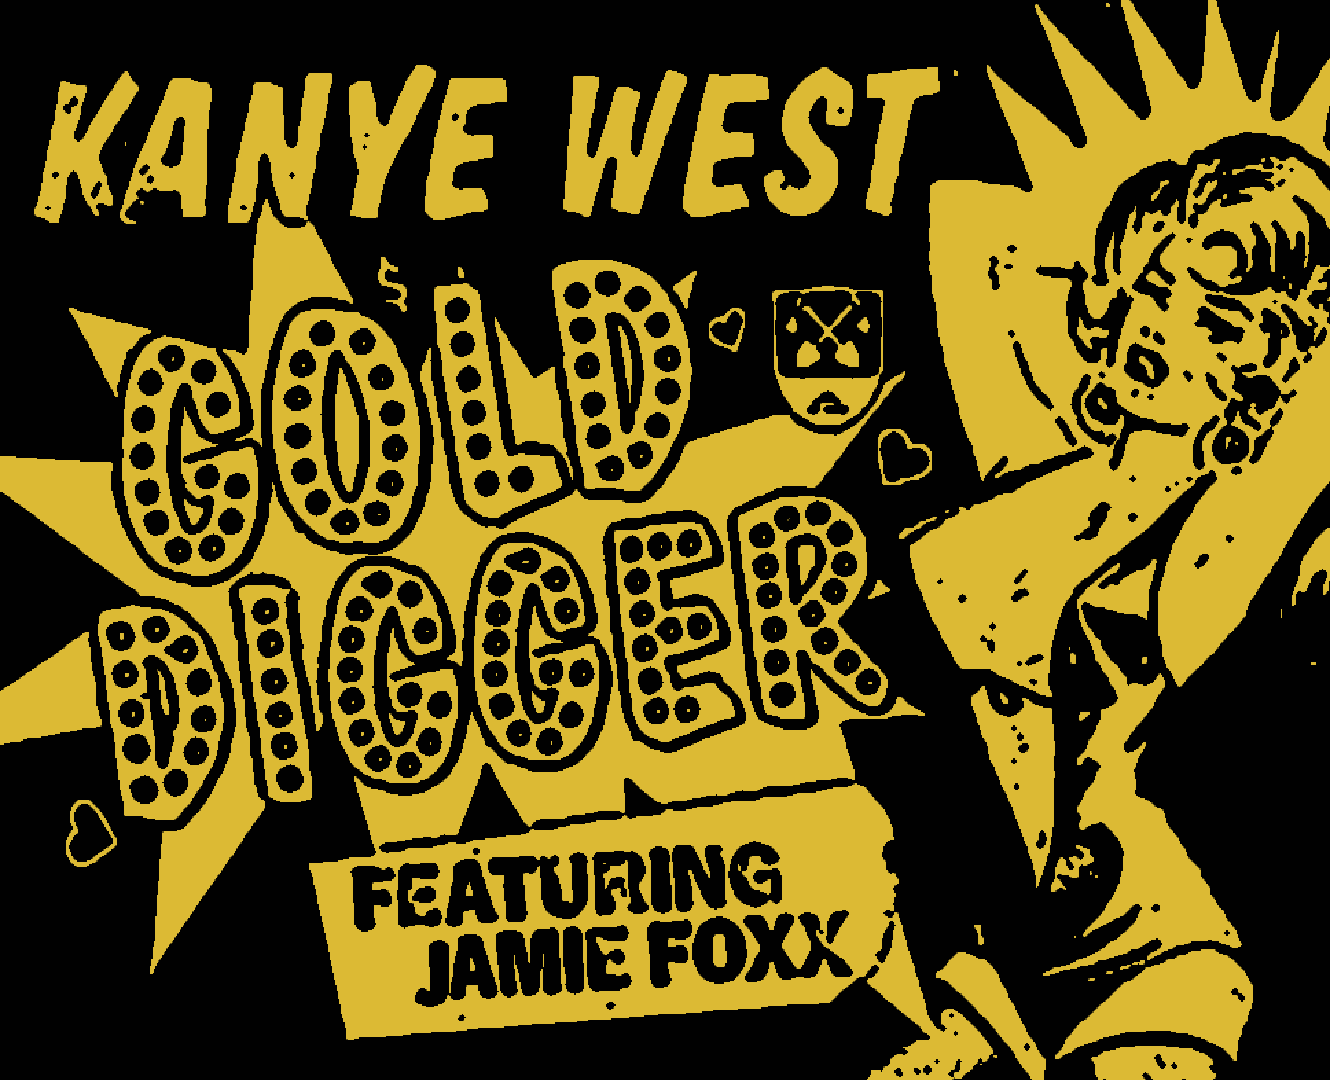 Kanye West Gold Digger